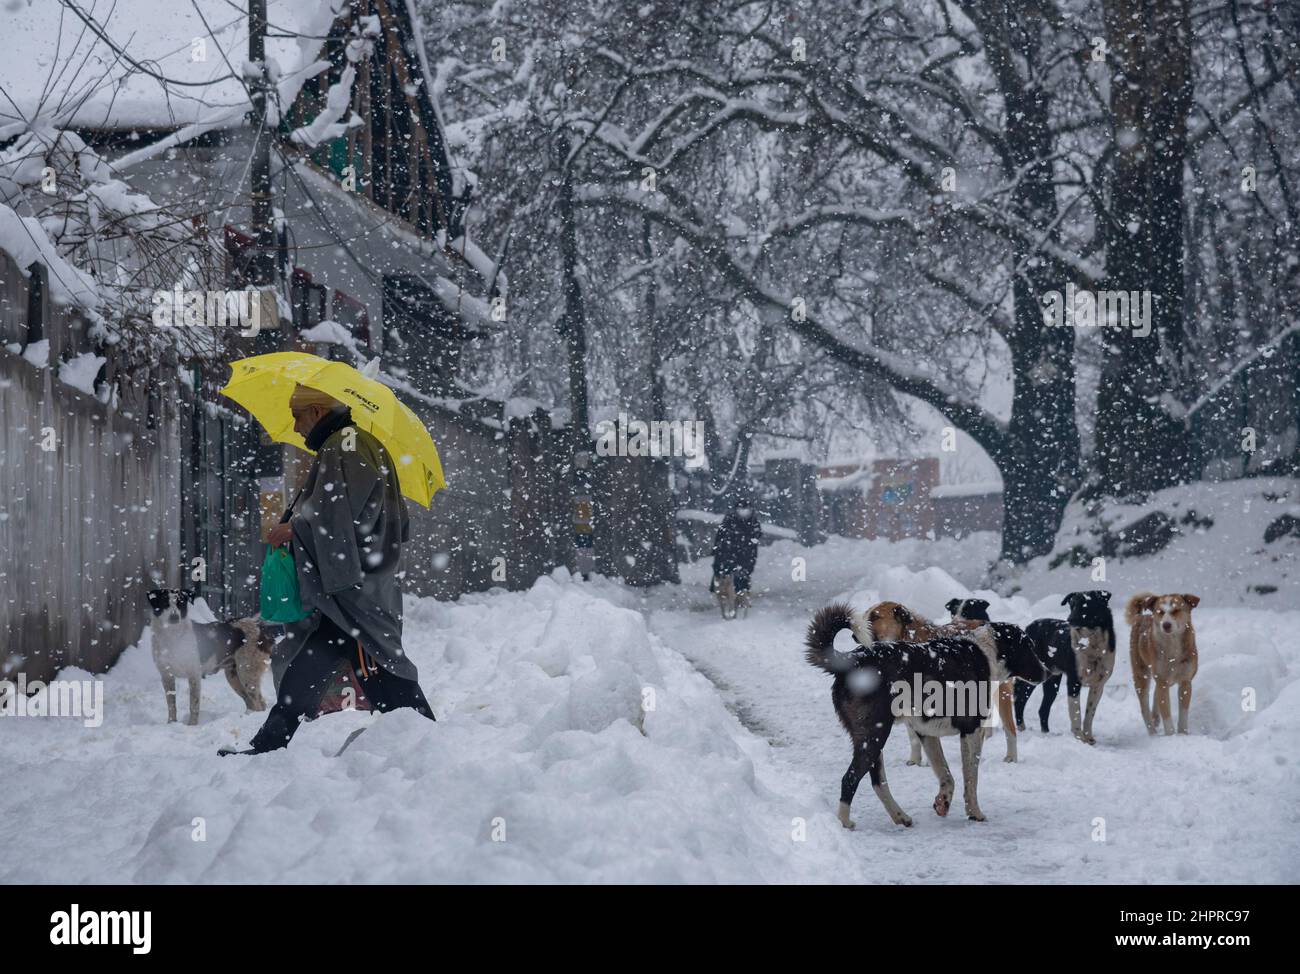 Cachemire, Inde , 23/02/2022, Srinagar, Inde. 23rd févr. 2022. Un homme tient un parapluie alors qu'il marche à travers une route enneigée avec des chiens pendant une forte chute de neige à Srinagar.la vallée du Cachemire se réveilla mercredi matin à une épaisse couverture de neige qui a perturbé la vie normale des gens. Les opérations de vol, le transport en surface et les activités de routine de la vie ont été interrompues. Crédit : SOPA Images Limited/Alamy Live News Banque D'Images